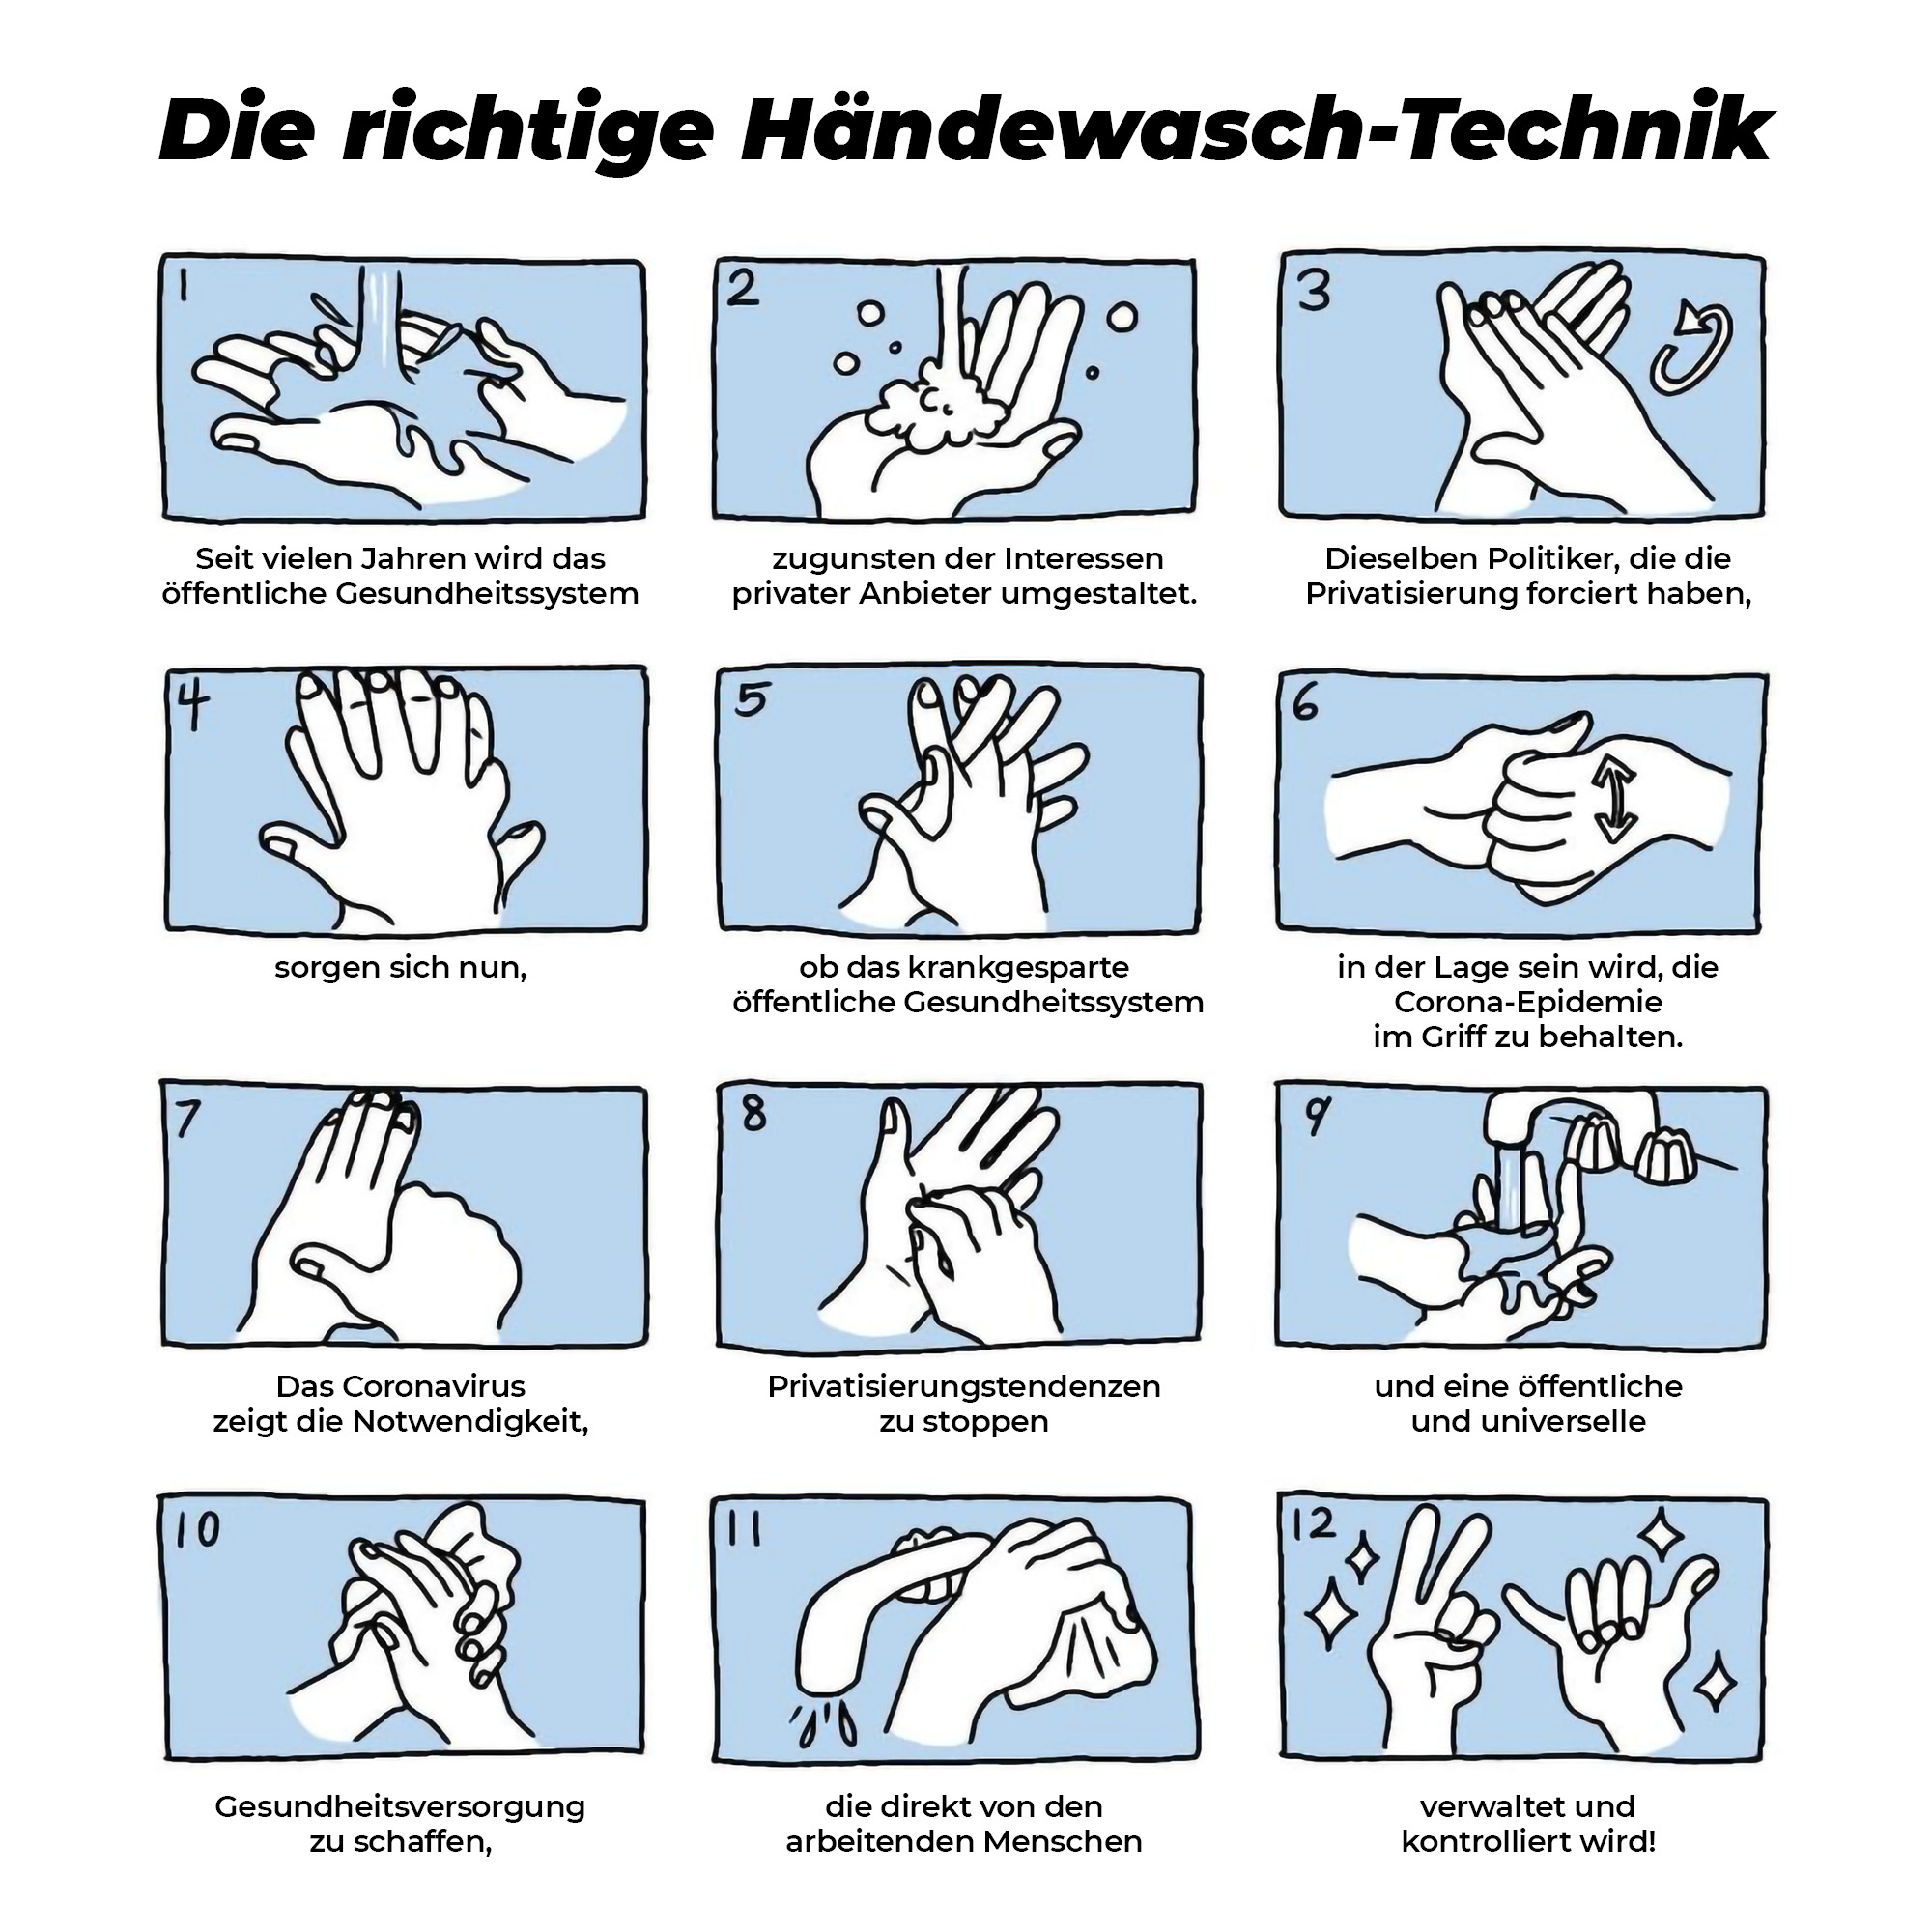 Gerade in diesen Tagen besonders wichtig: Hände waschen nicht vergessen!